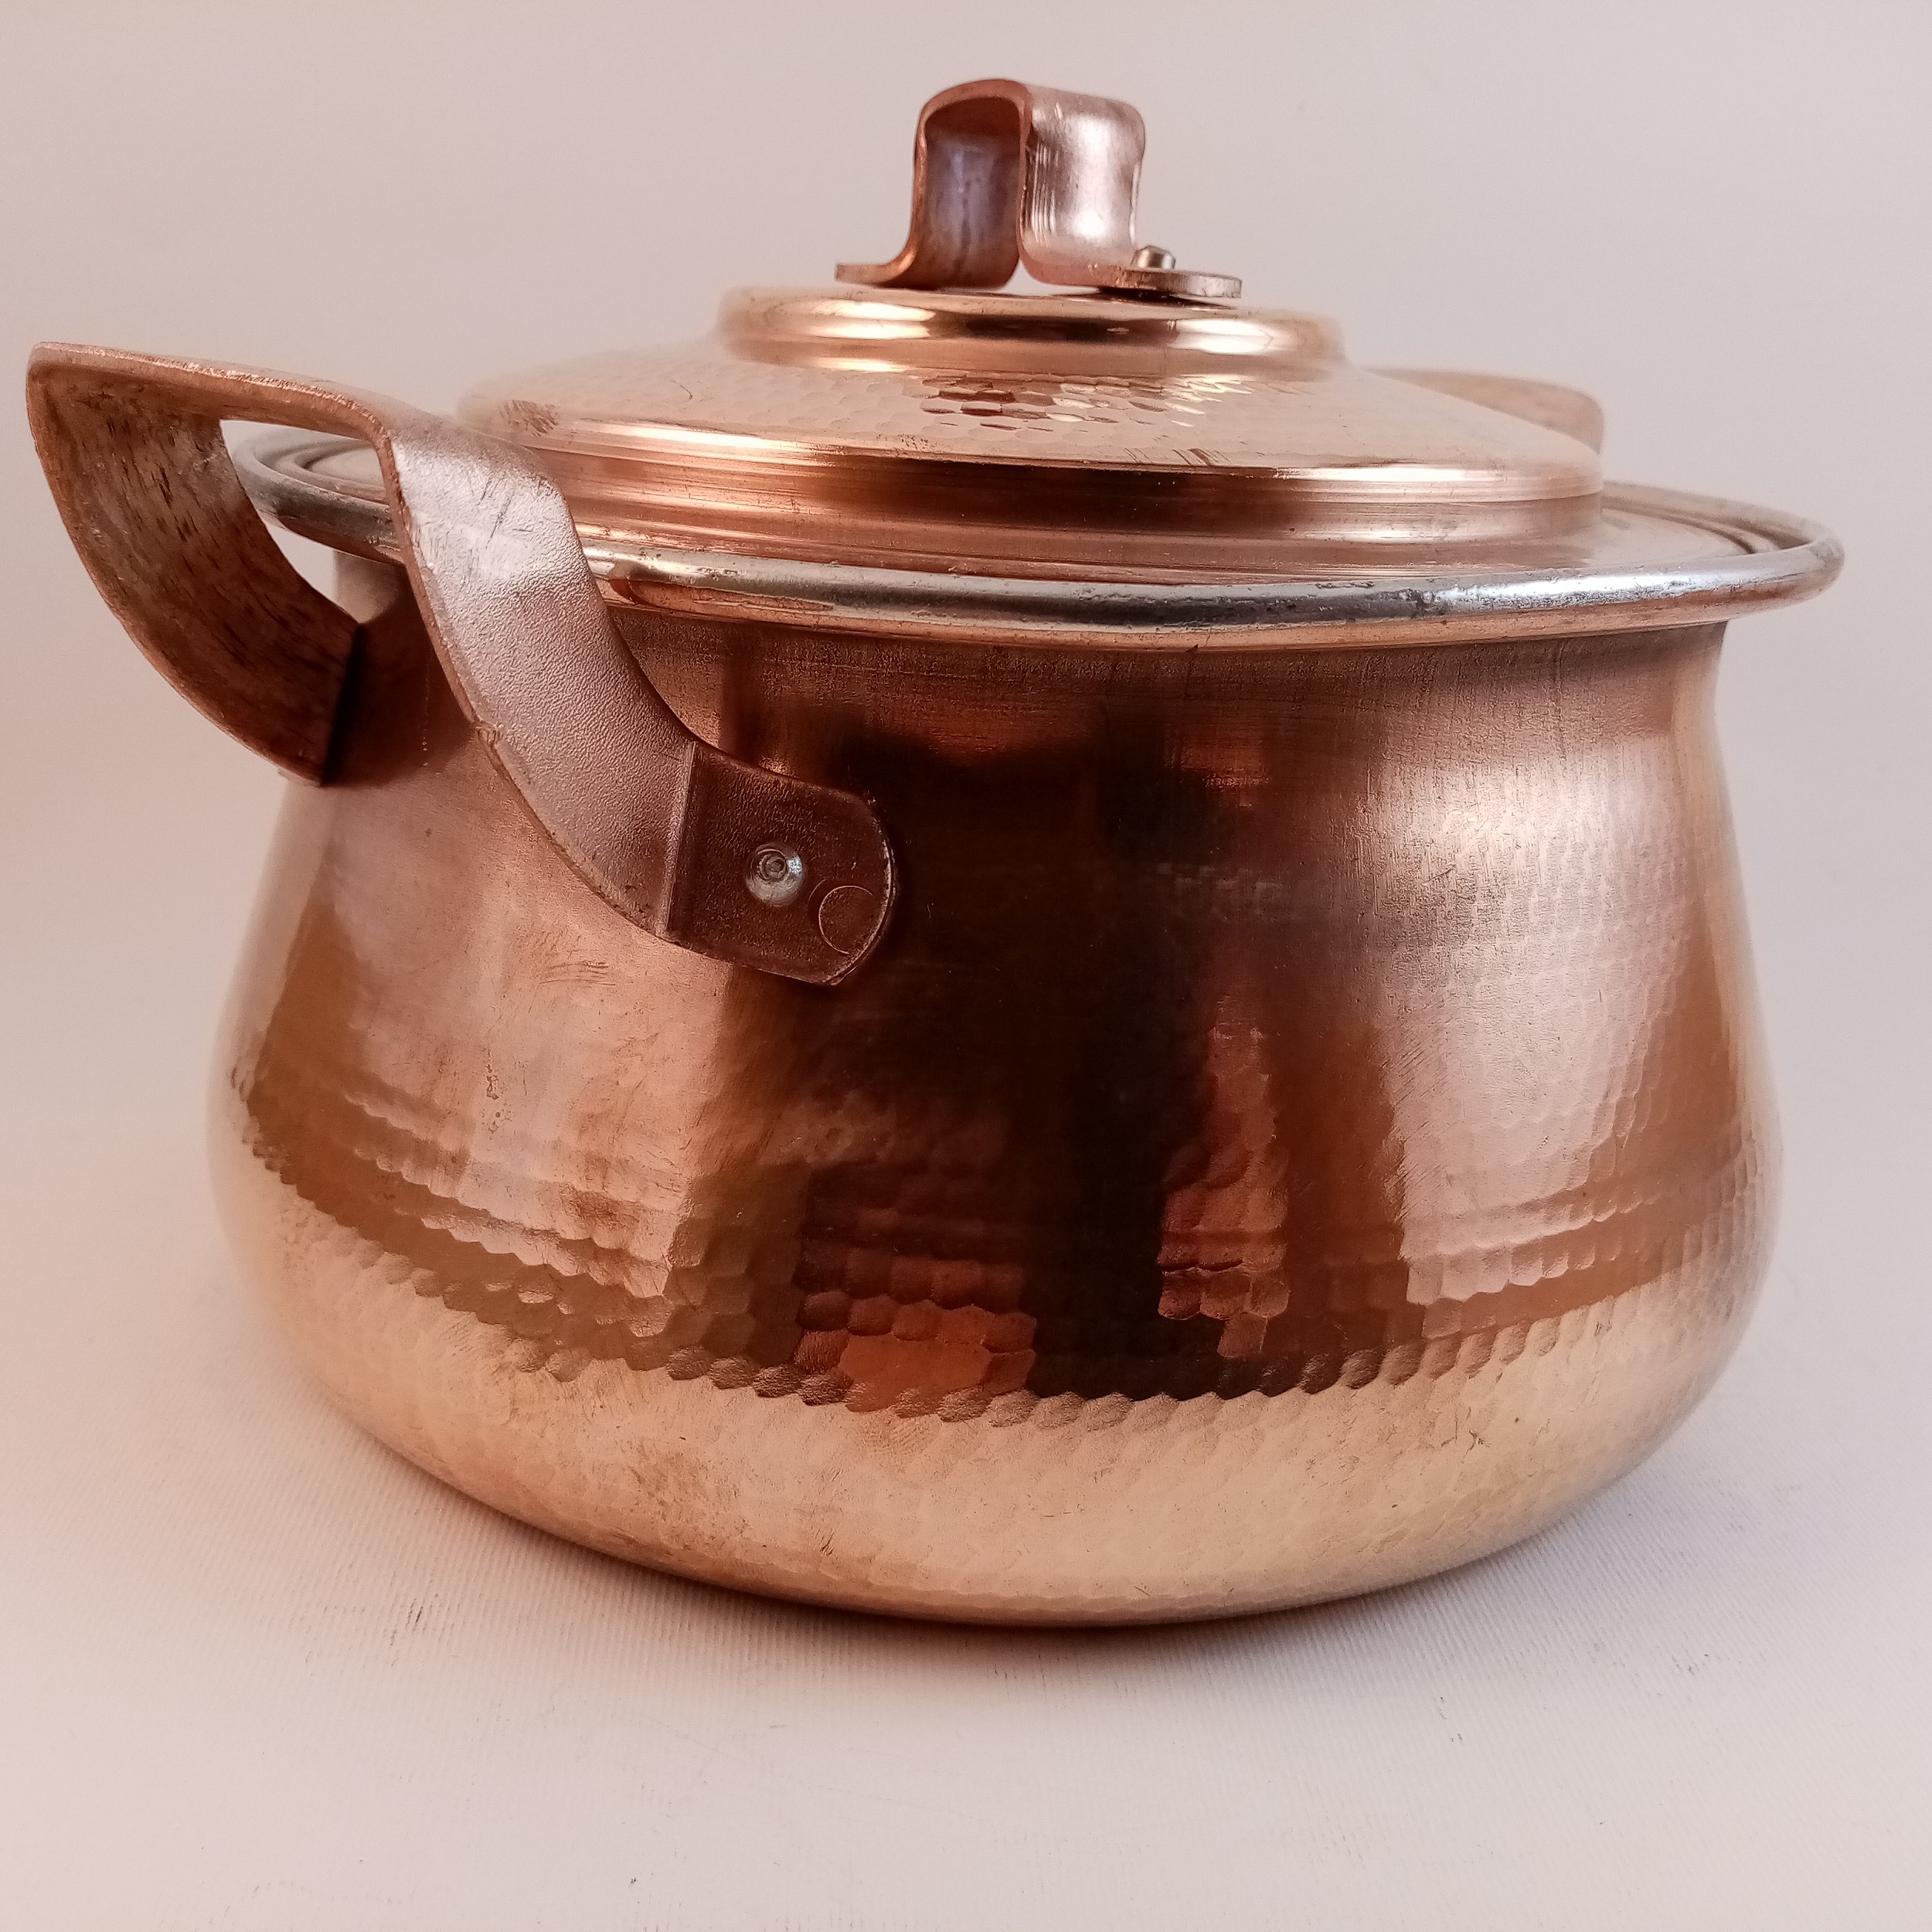 Copper pan, code M11